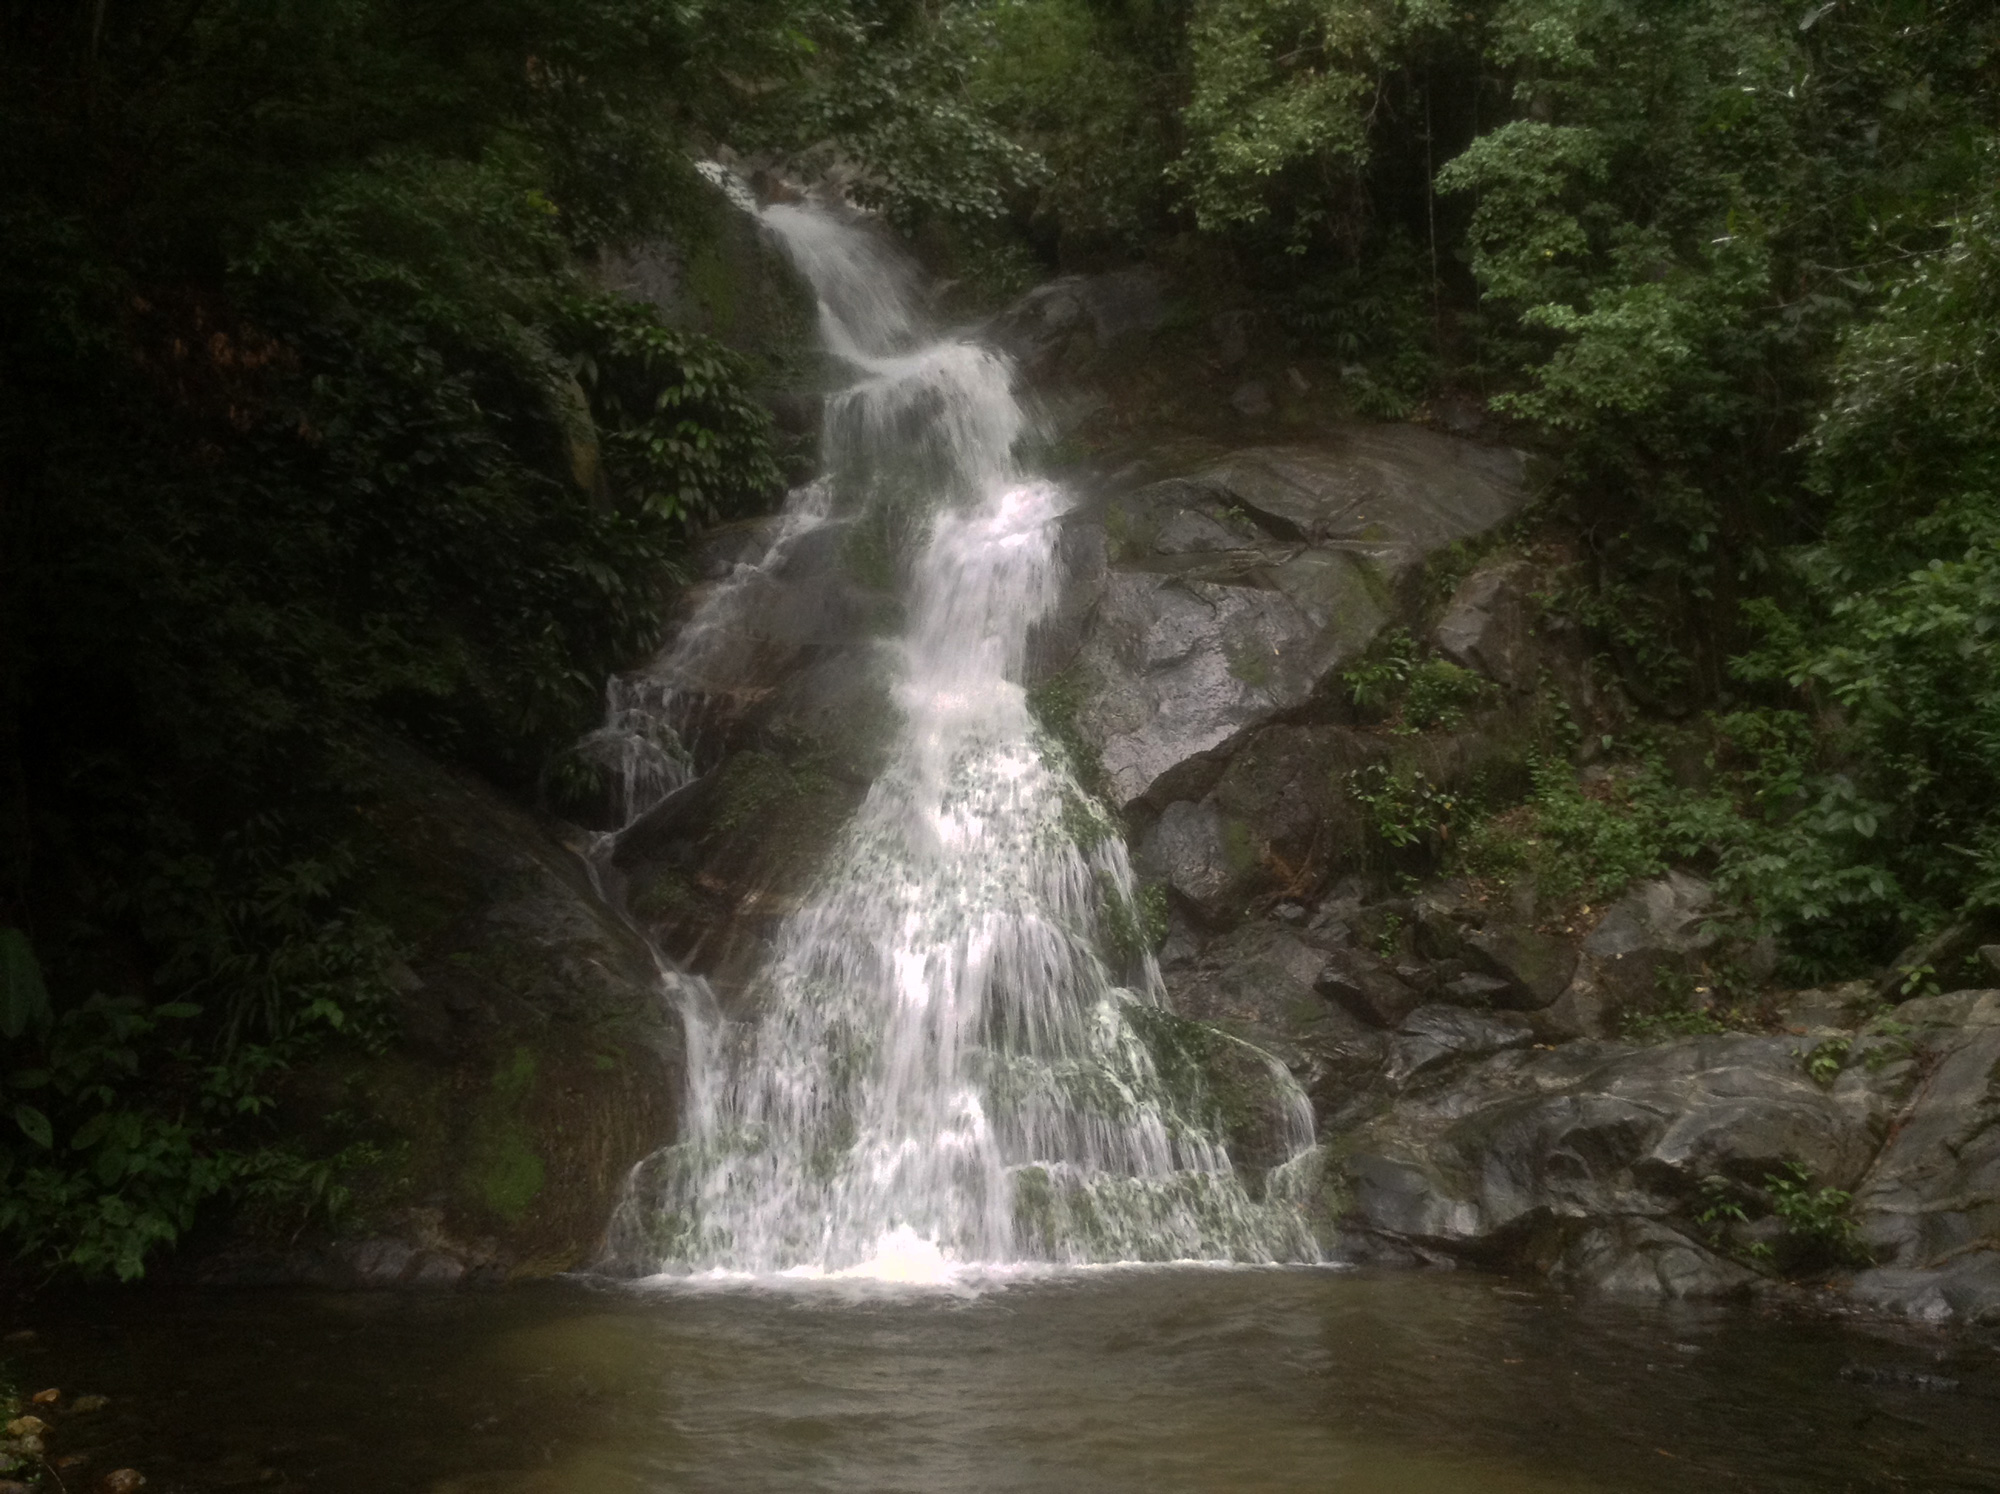 Paso del mango’s hidden waterfalls